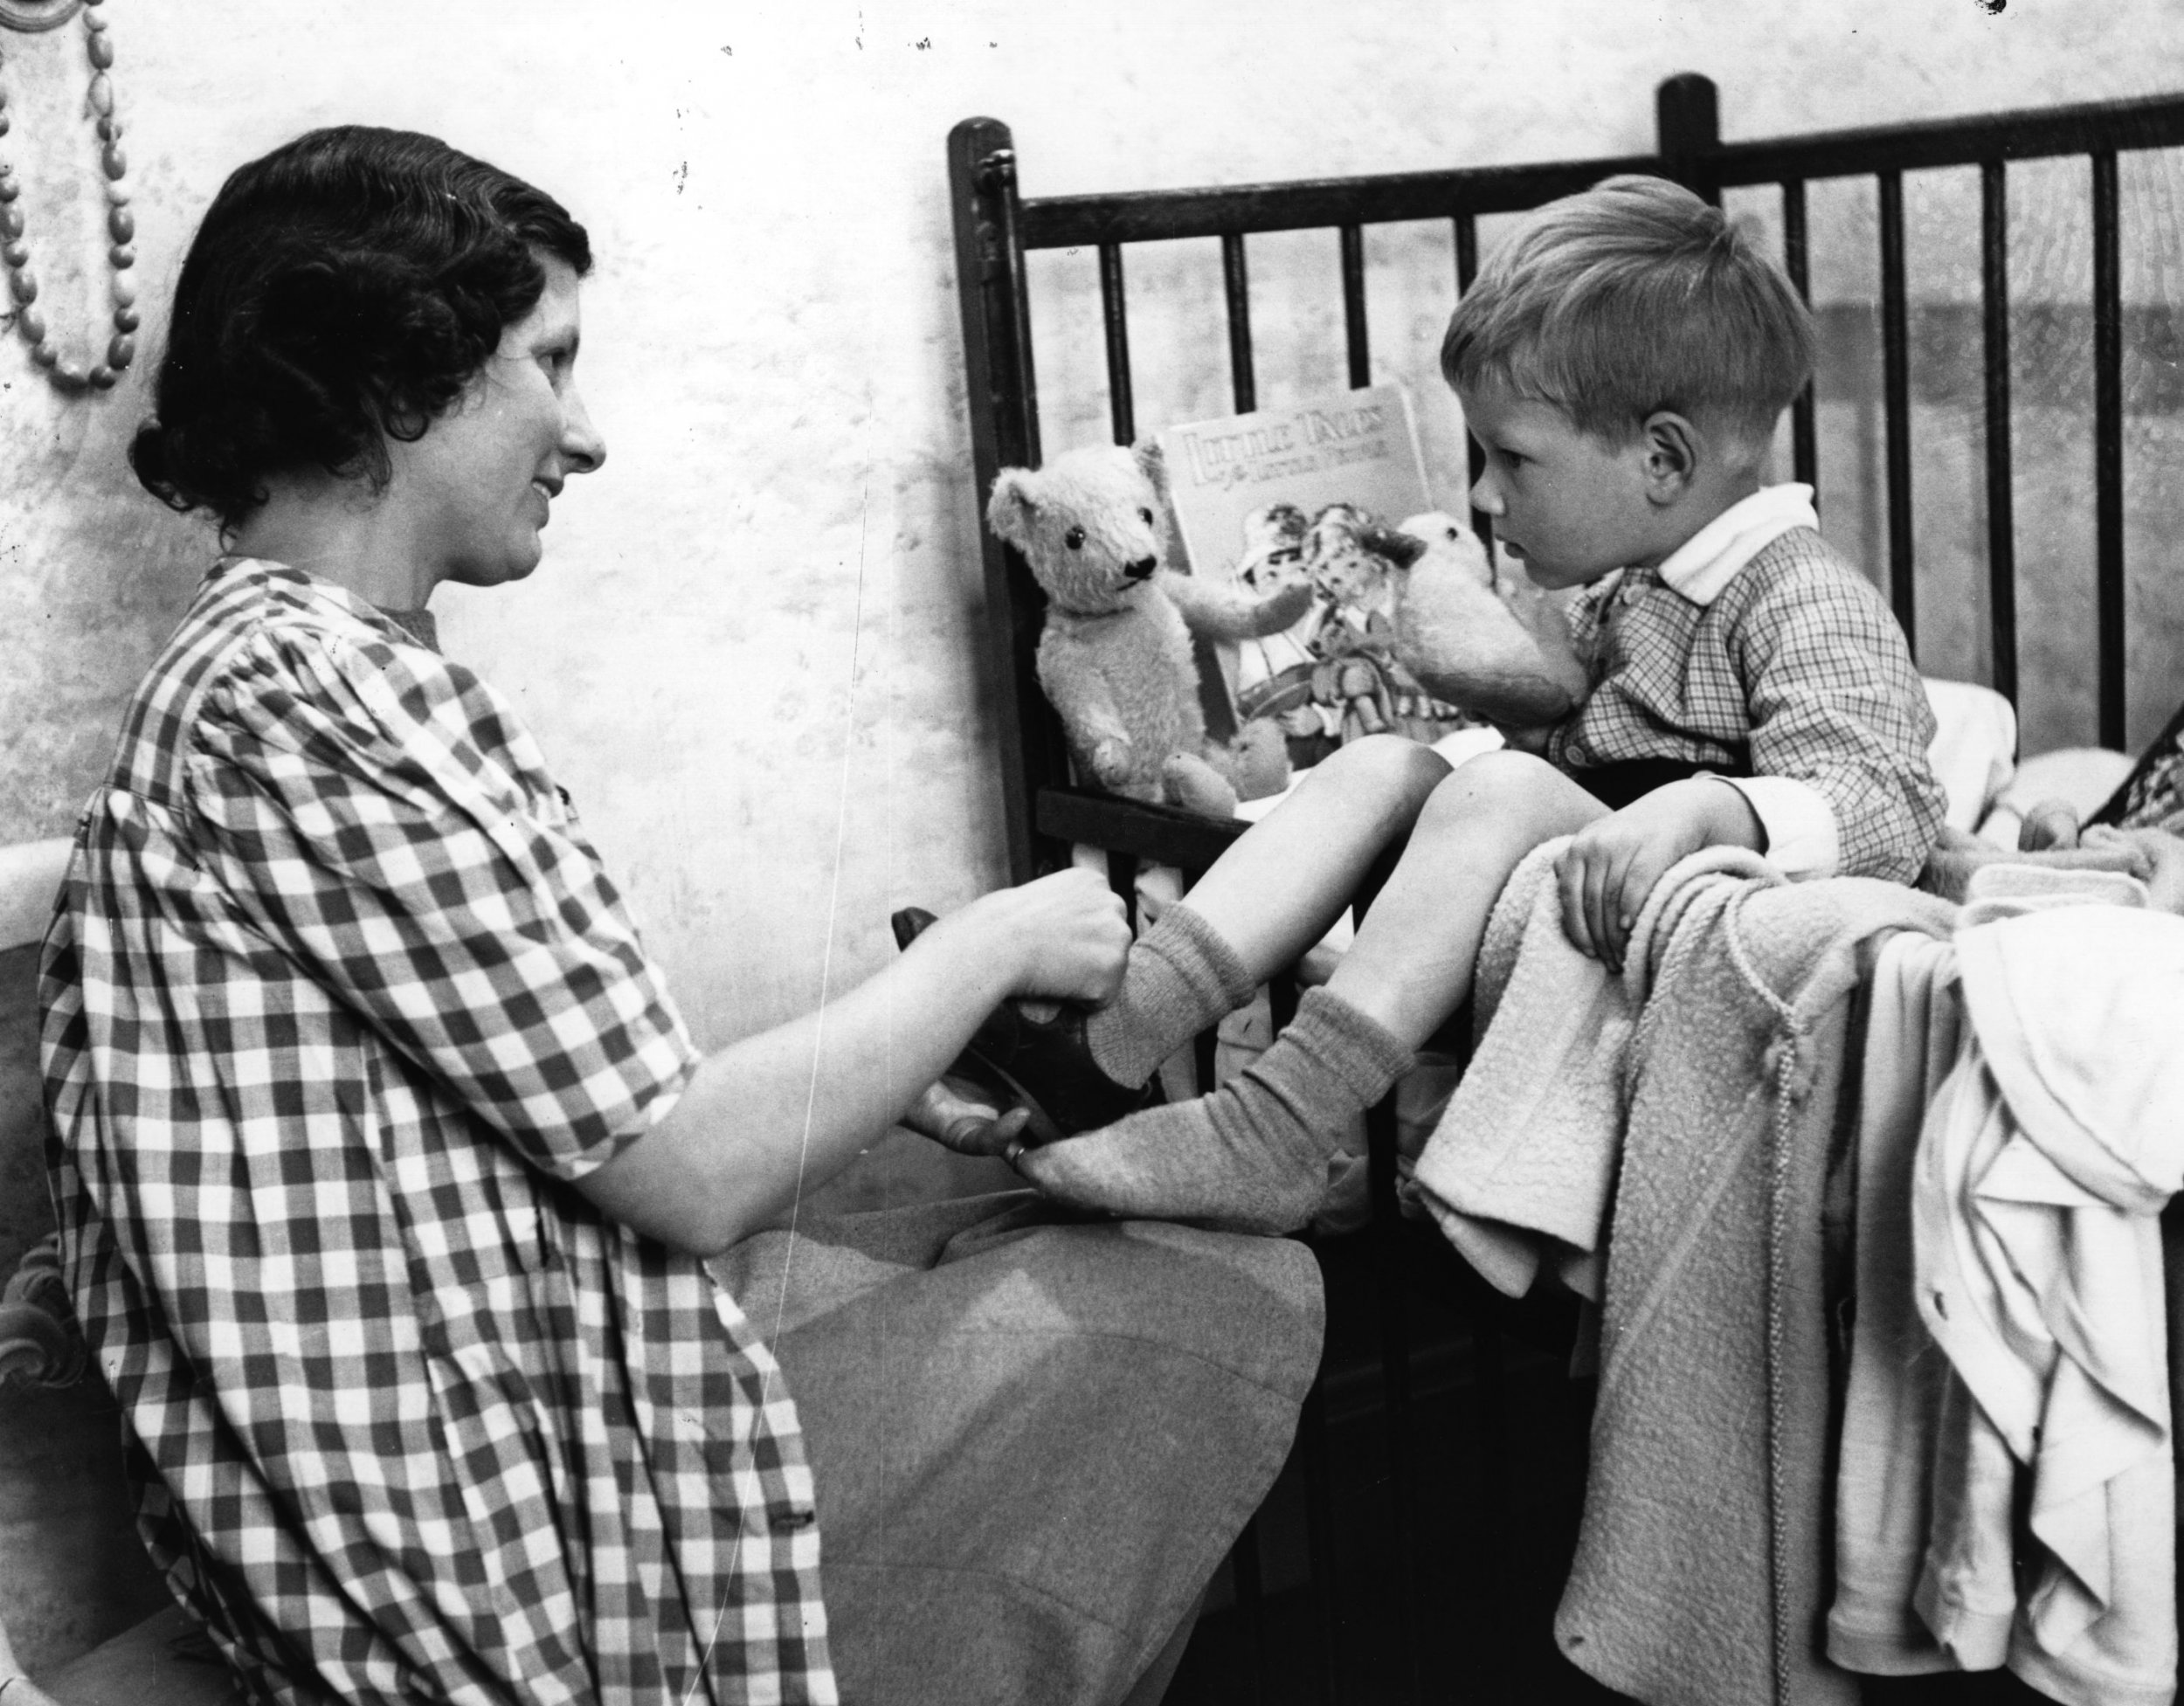 Bedtime in 1942